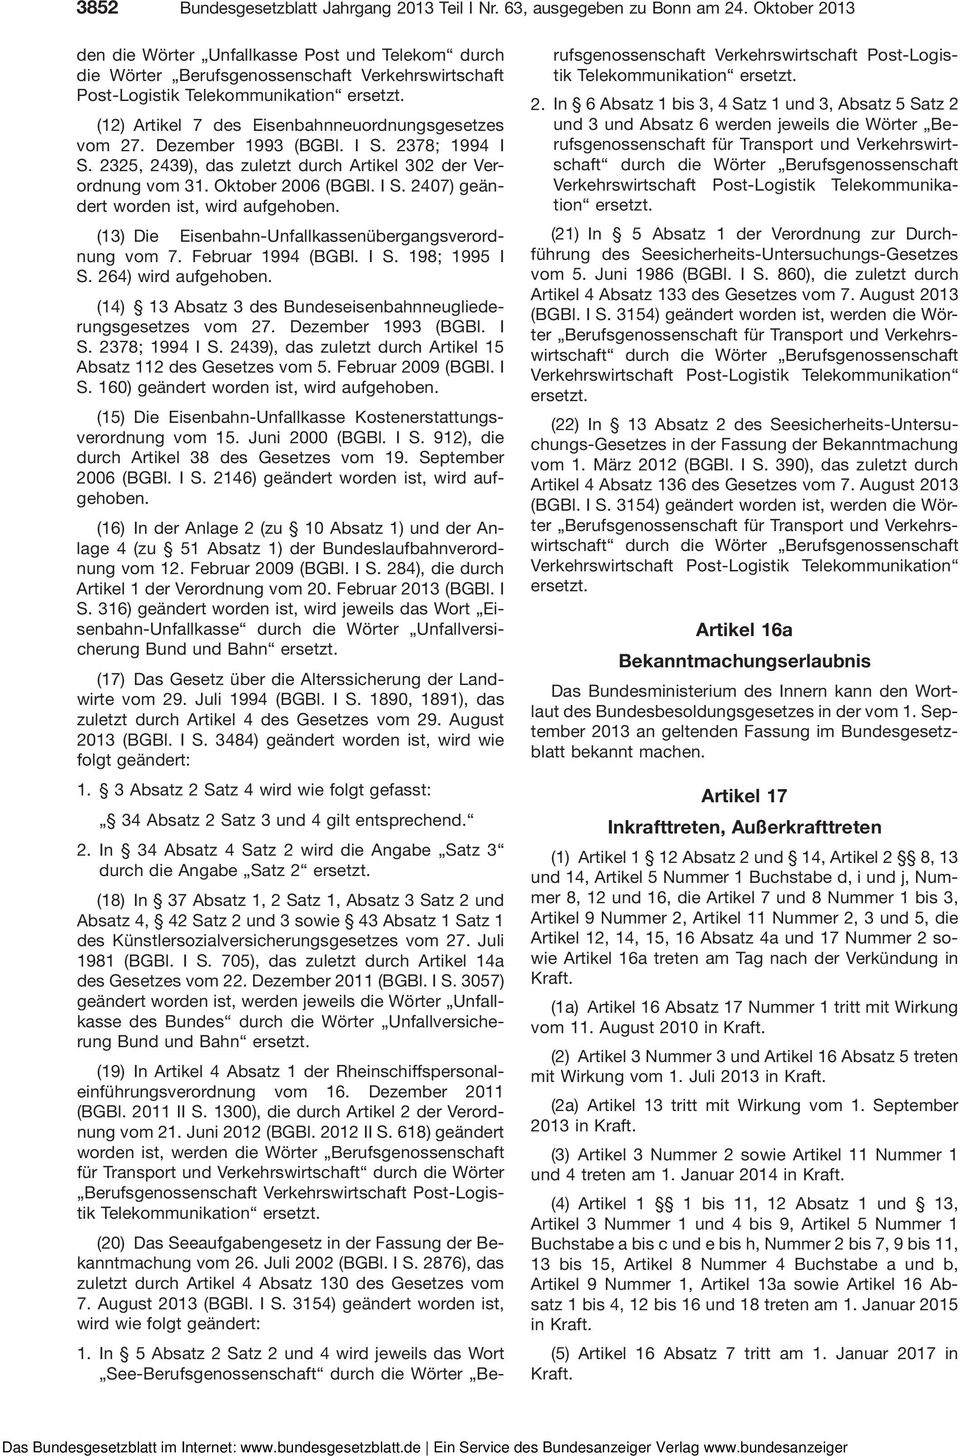 27. Dezember 1993 (BGBl. I S. 2378; 1994 I S. 2325, 2439), das zuletzt durch Artikel 302 der Verordnung vom 31. Oktober 2006 (BGBl. I S. 2407) geändert worden ist, wird aufgehoben.